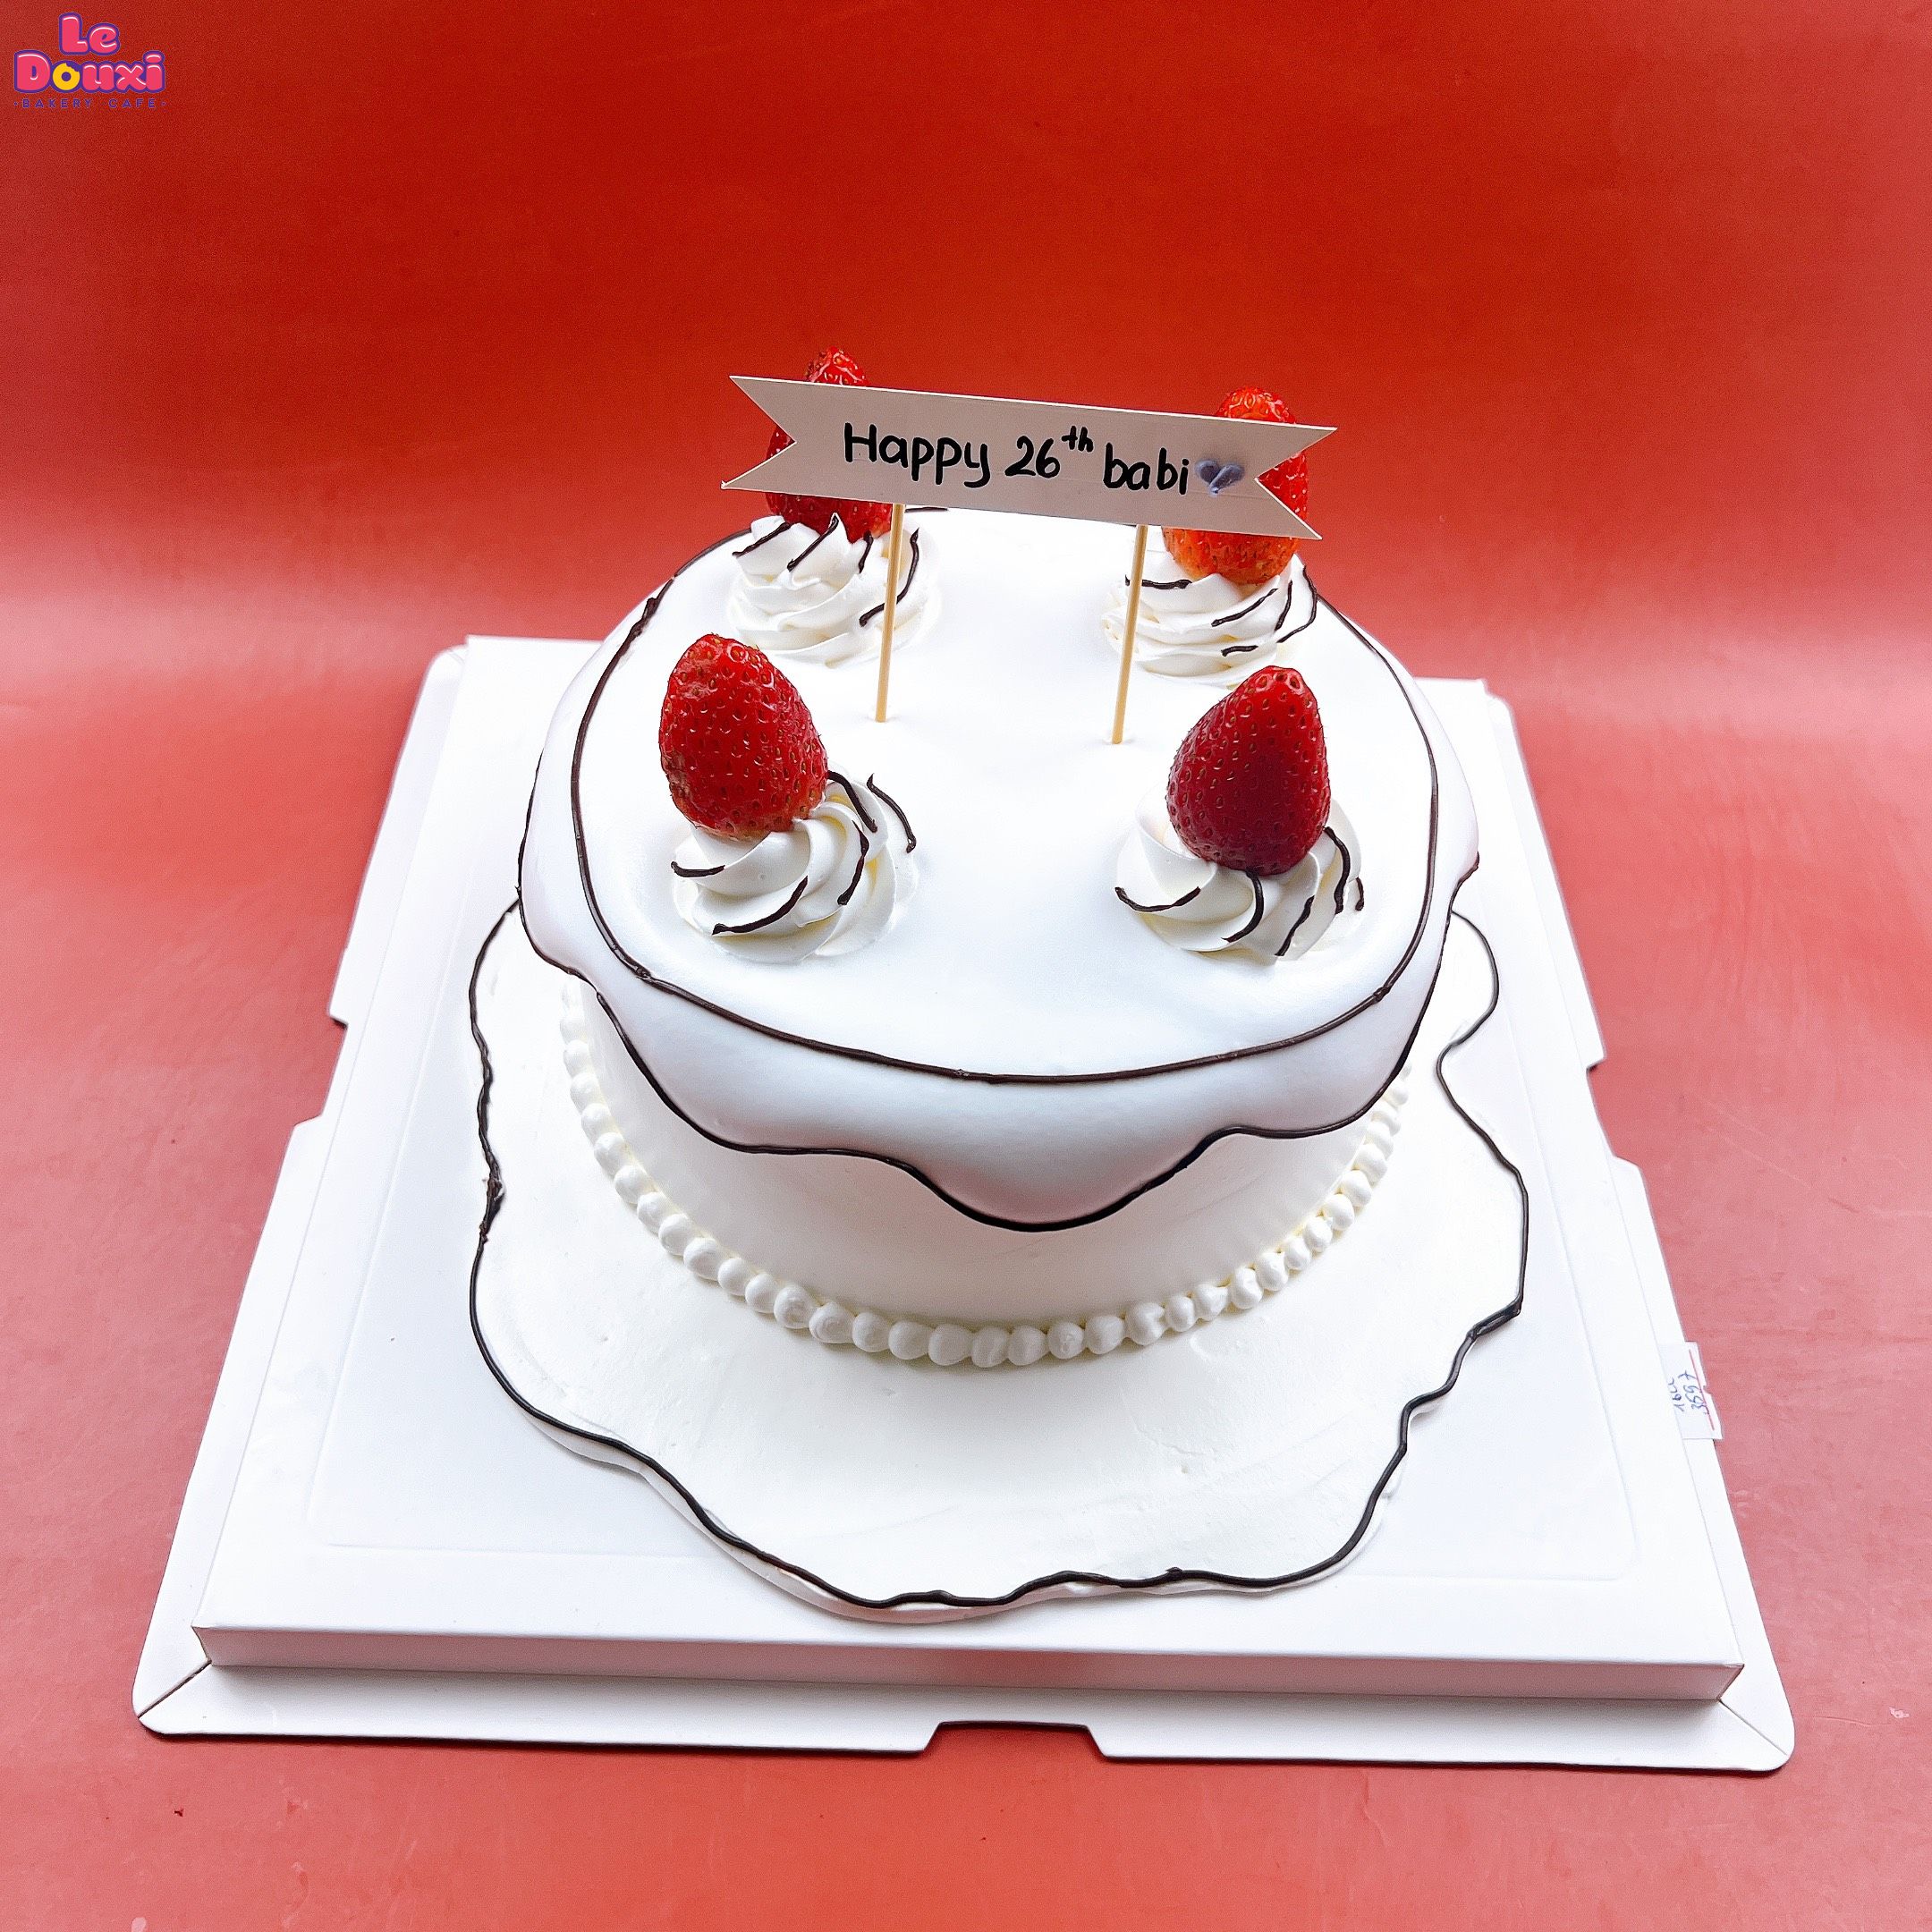 Bánh kem sinh nhật tạo hình trái tim chúc mừng sinh nhật bà ngoại Mẫu  51778  FRIENDSHIP CAKES  GIFT